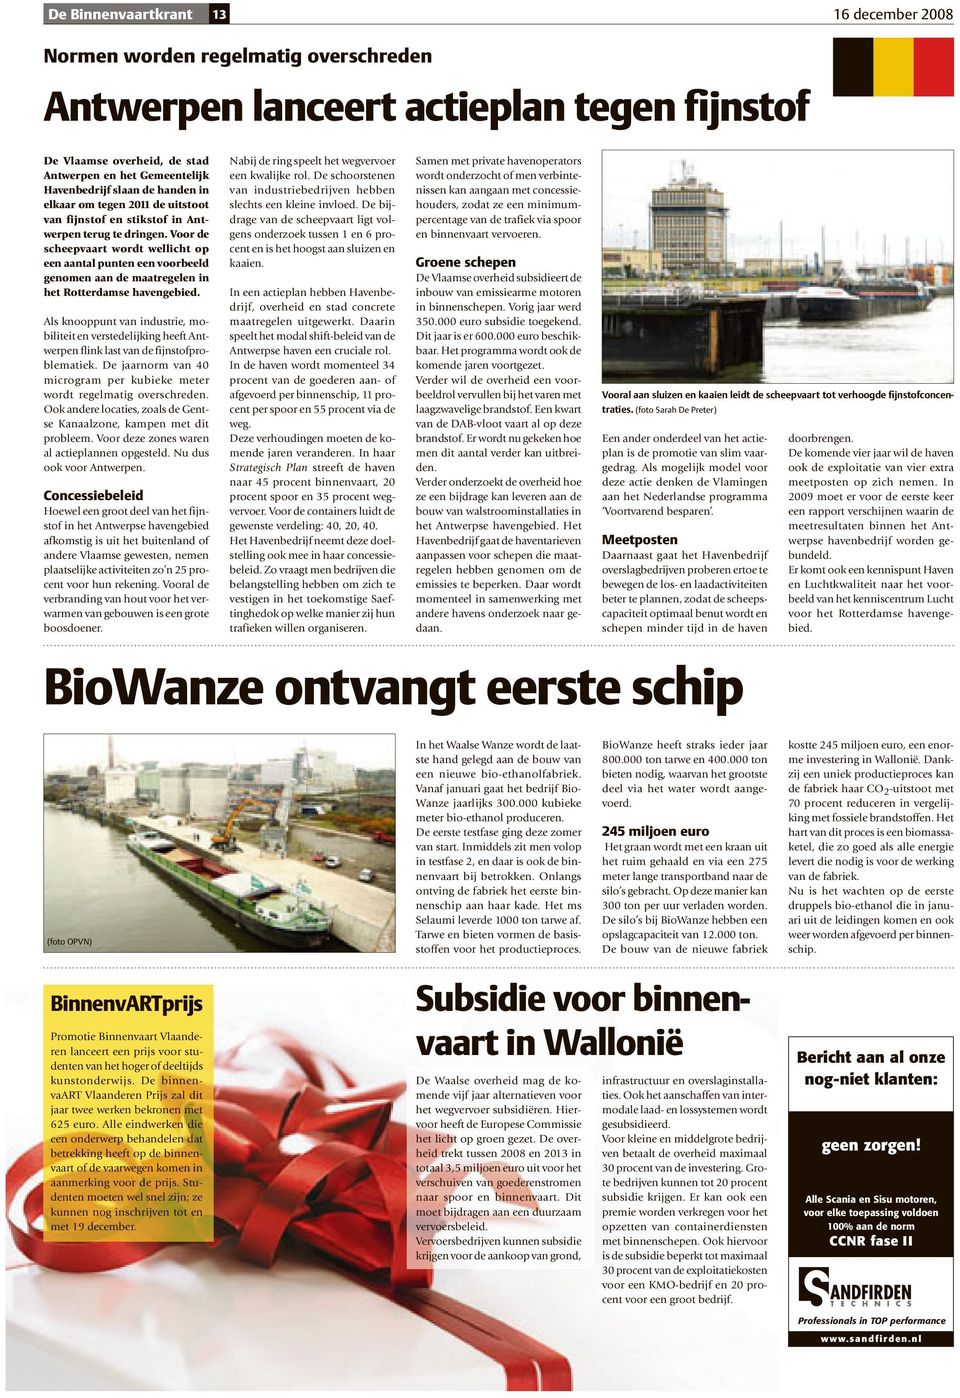 Voor de scheepvaart wordt wellicht op een aantal punten een voorbeeld genomen aan de maatregelen in het Rotterdamse havengebied.